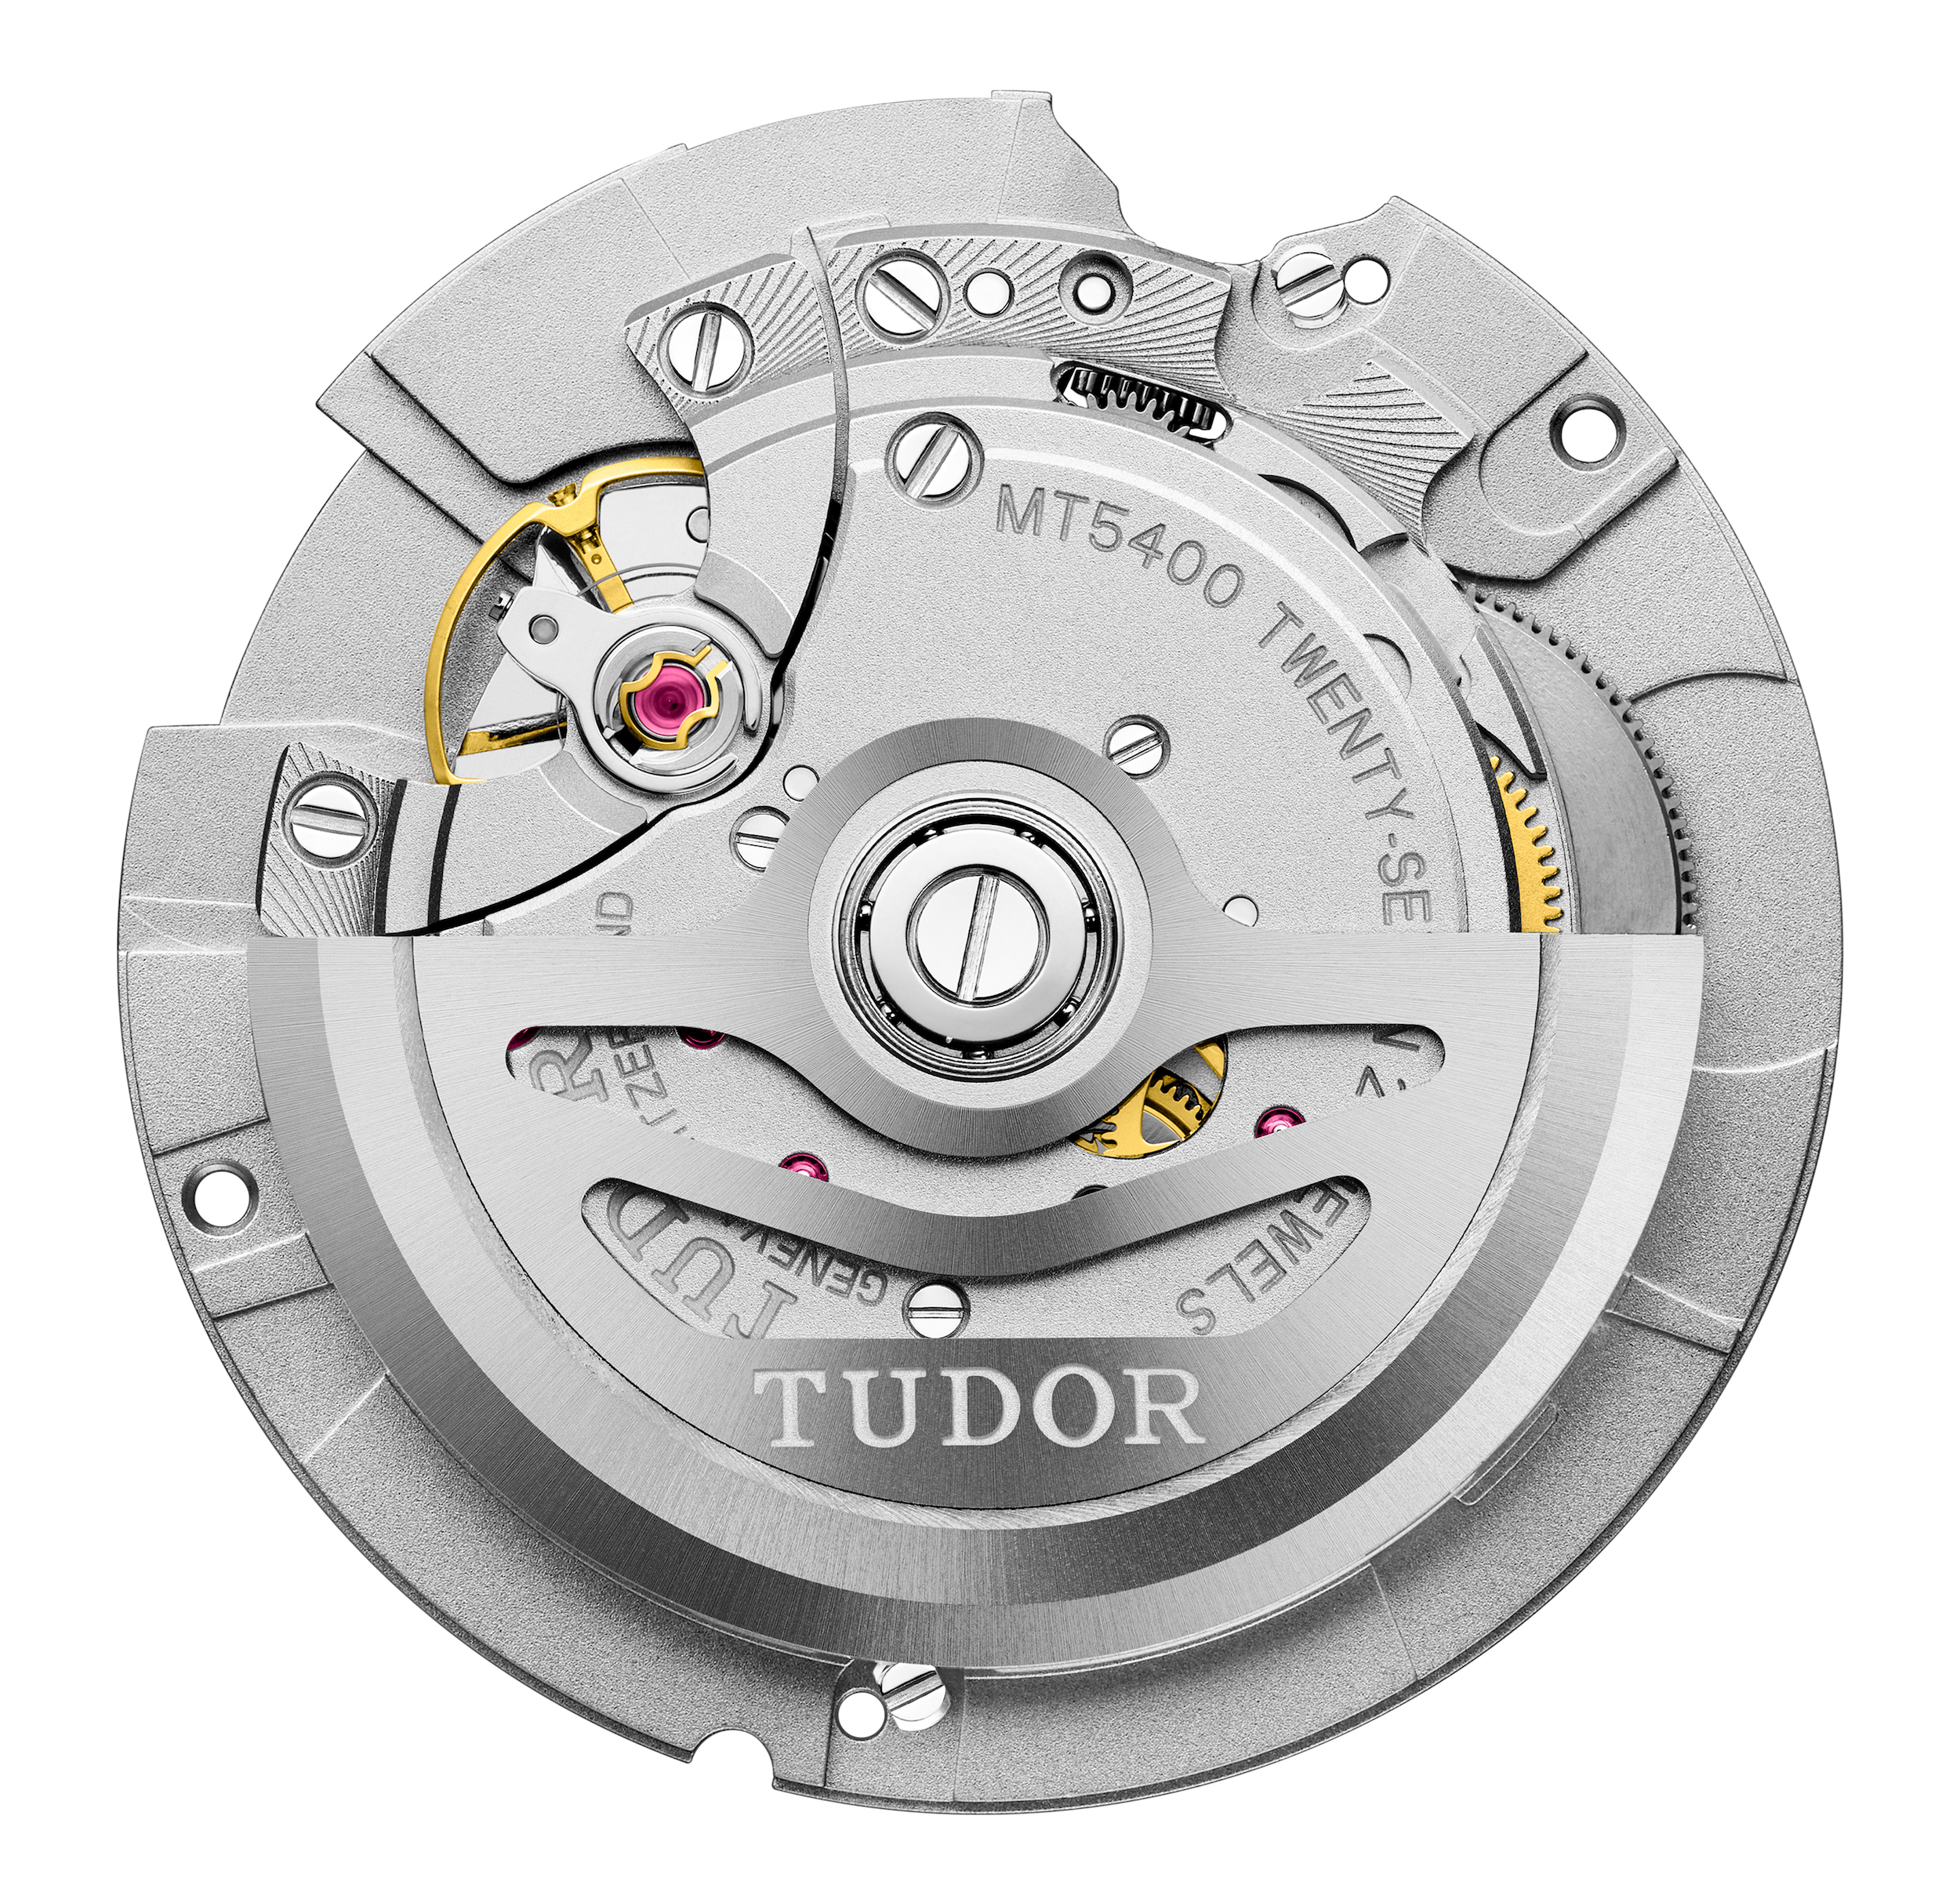 Tudor caliber MT5402